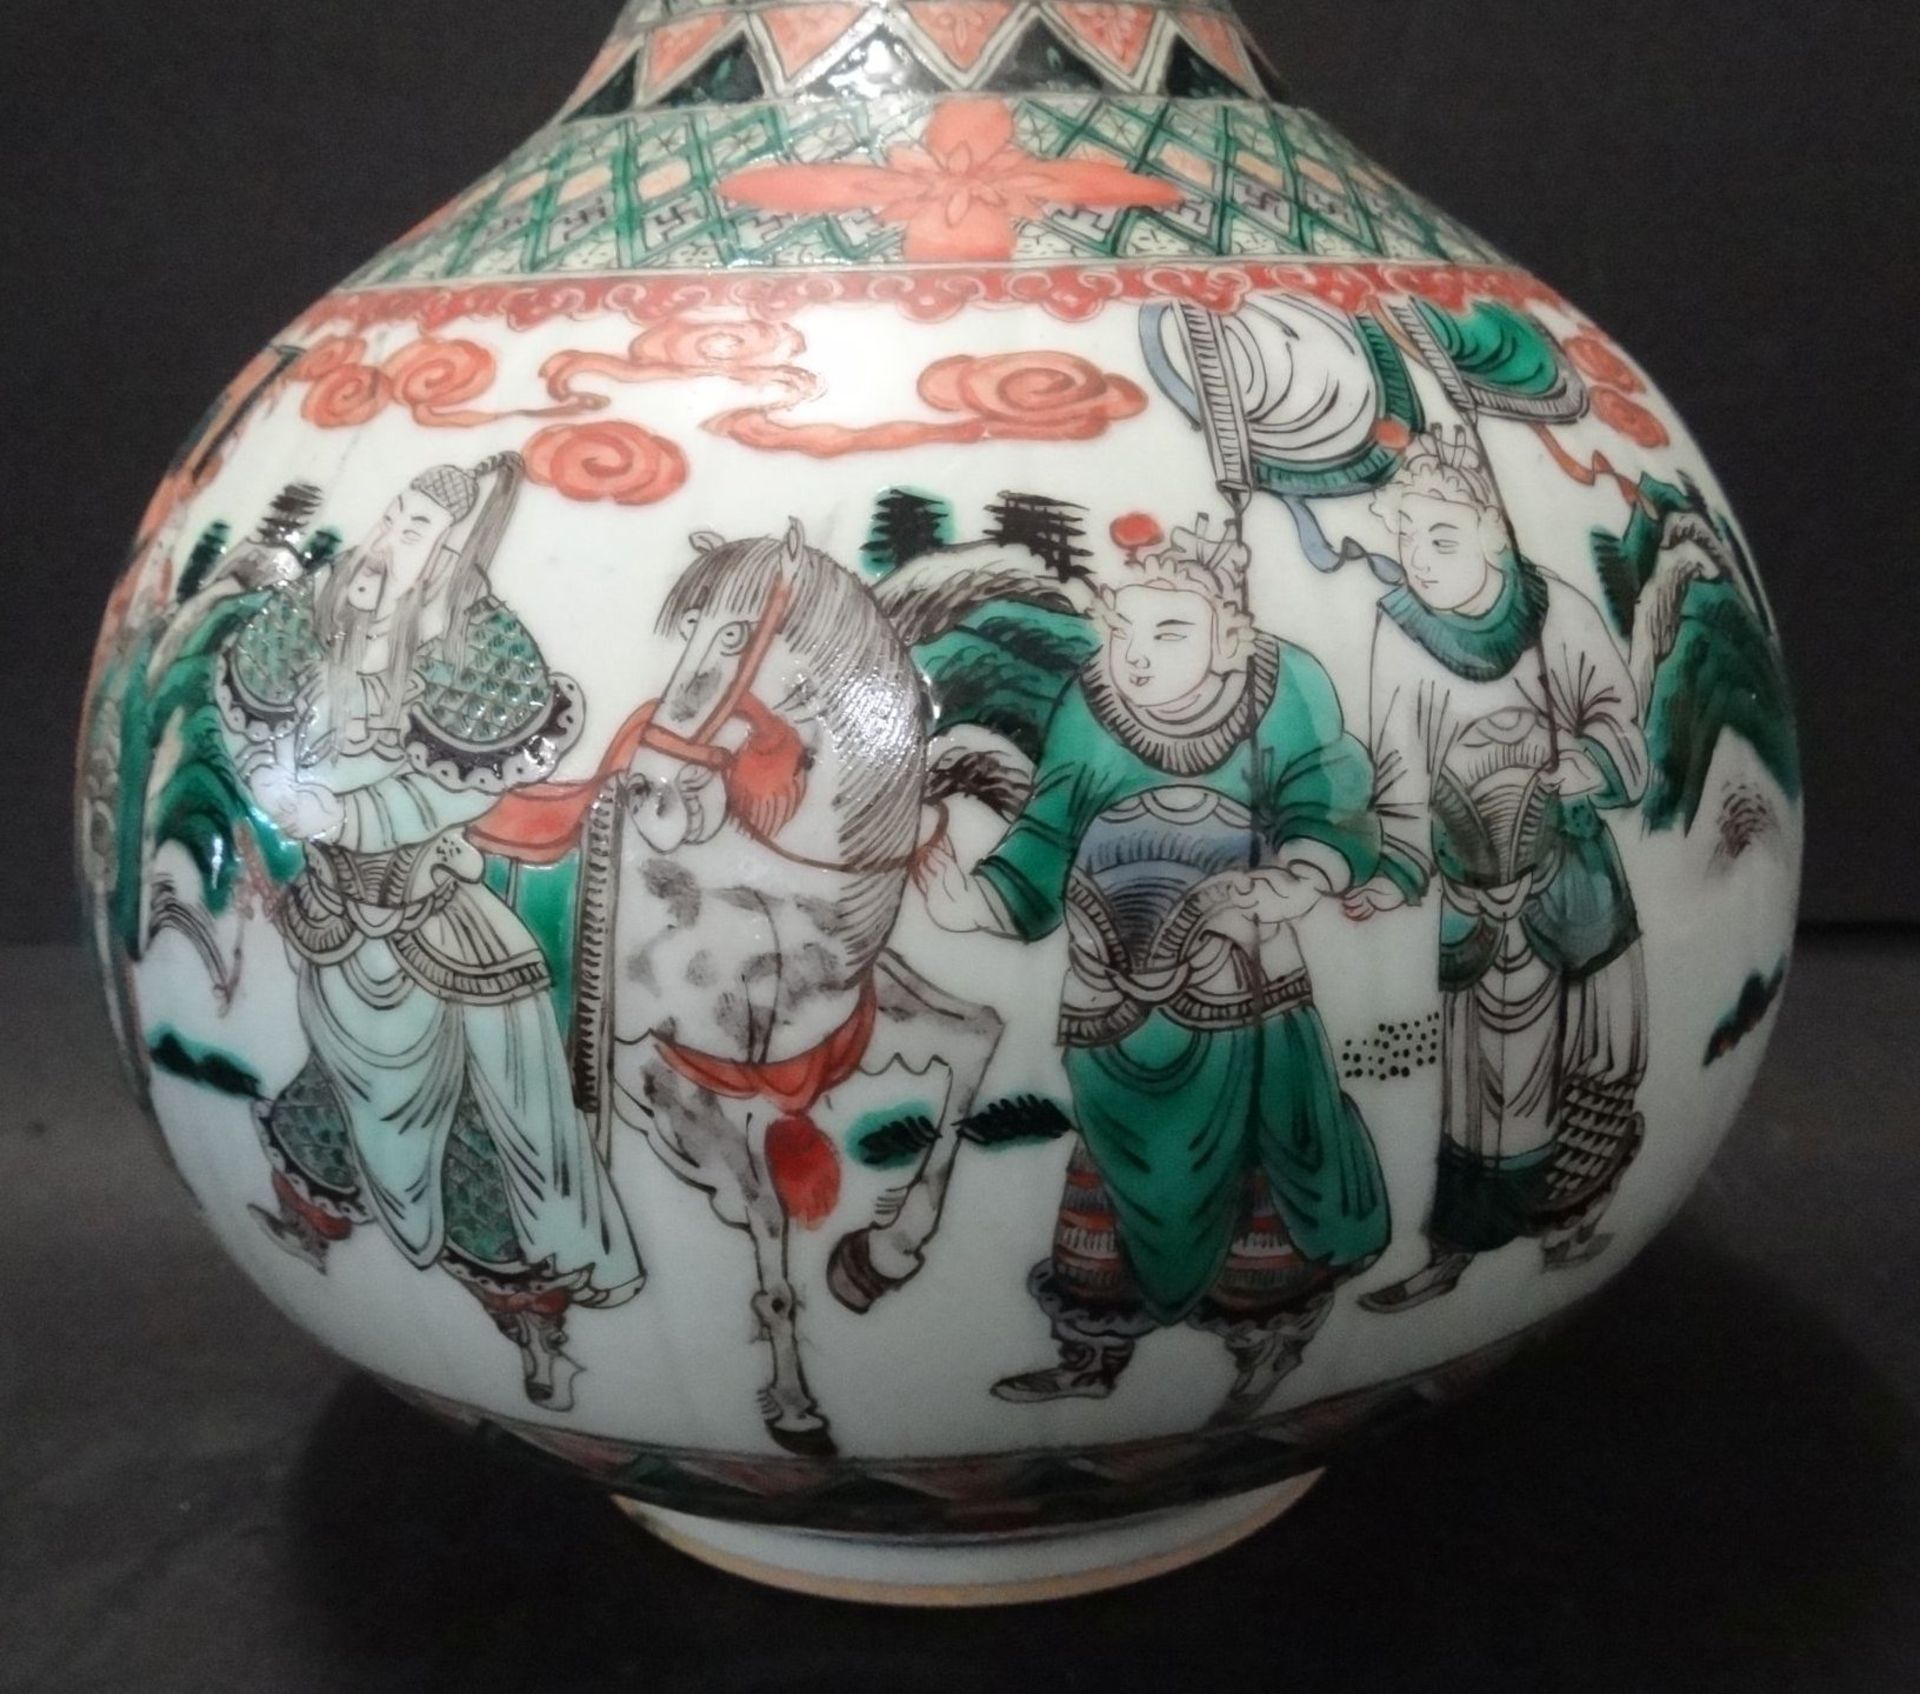 gr. Kürbisvase, China, umlaufend figürliches Dekor, guter Zustand, H-31 cm, D-20"""" - Image 2 of 7